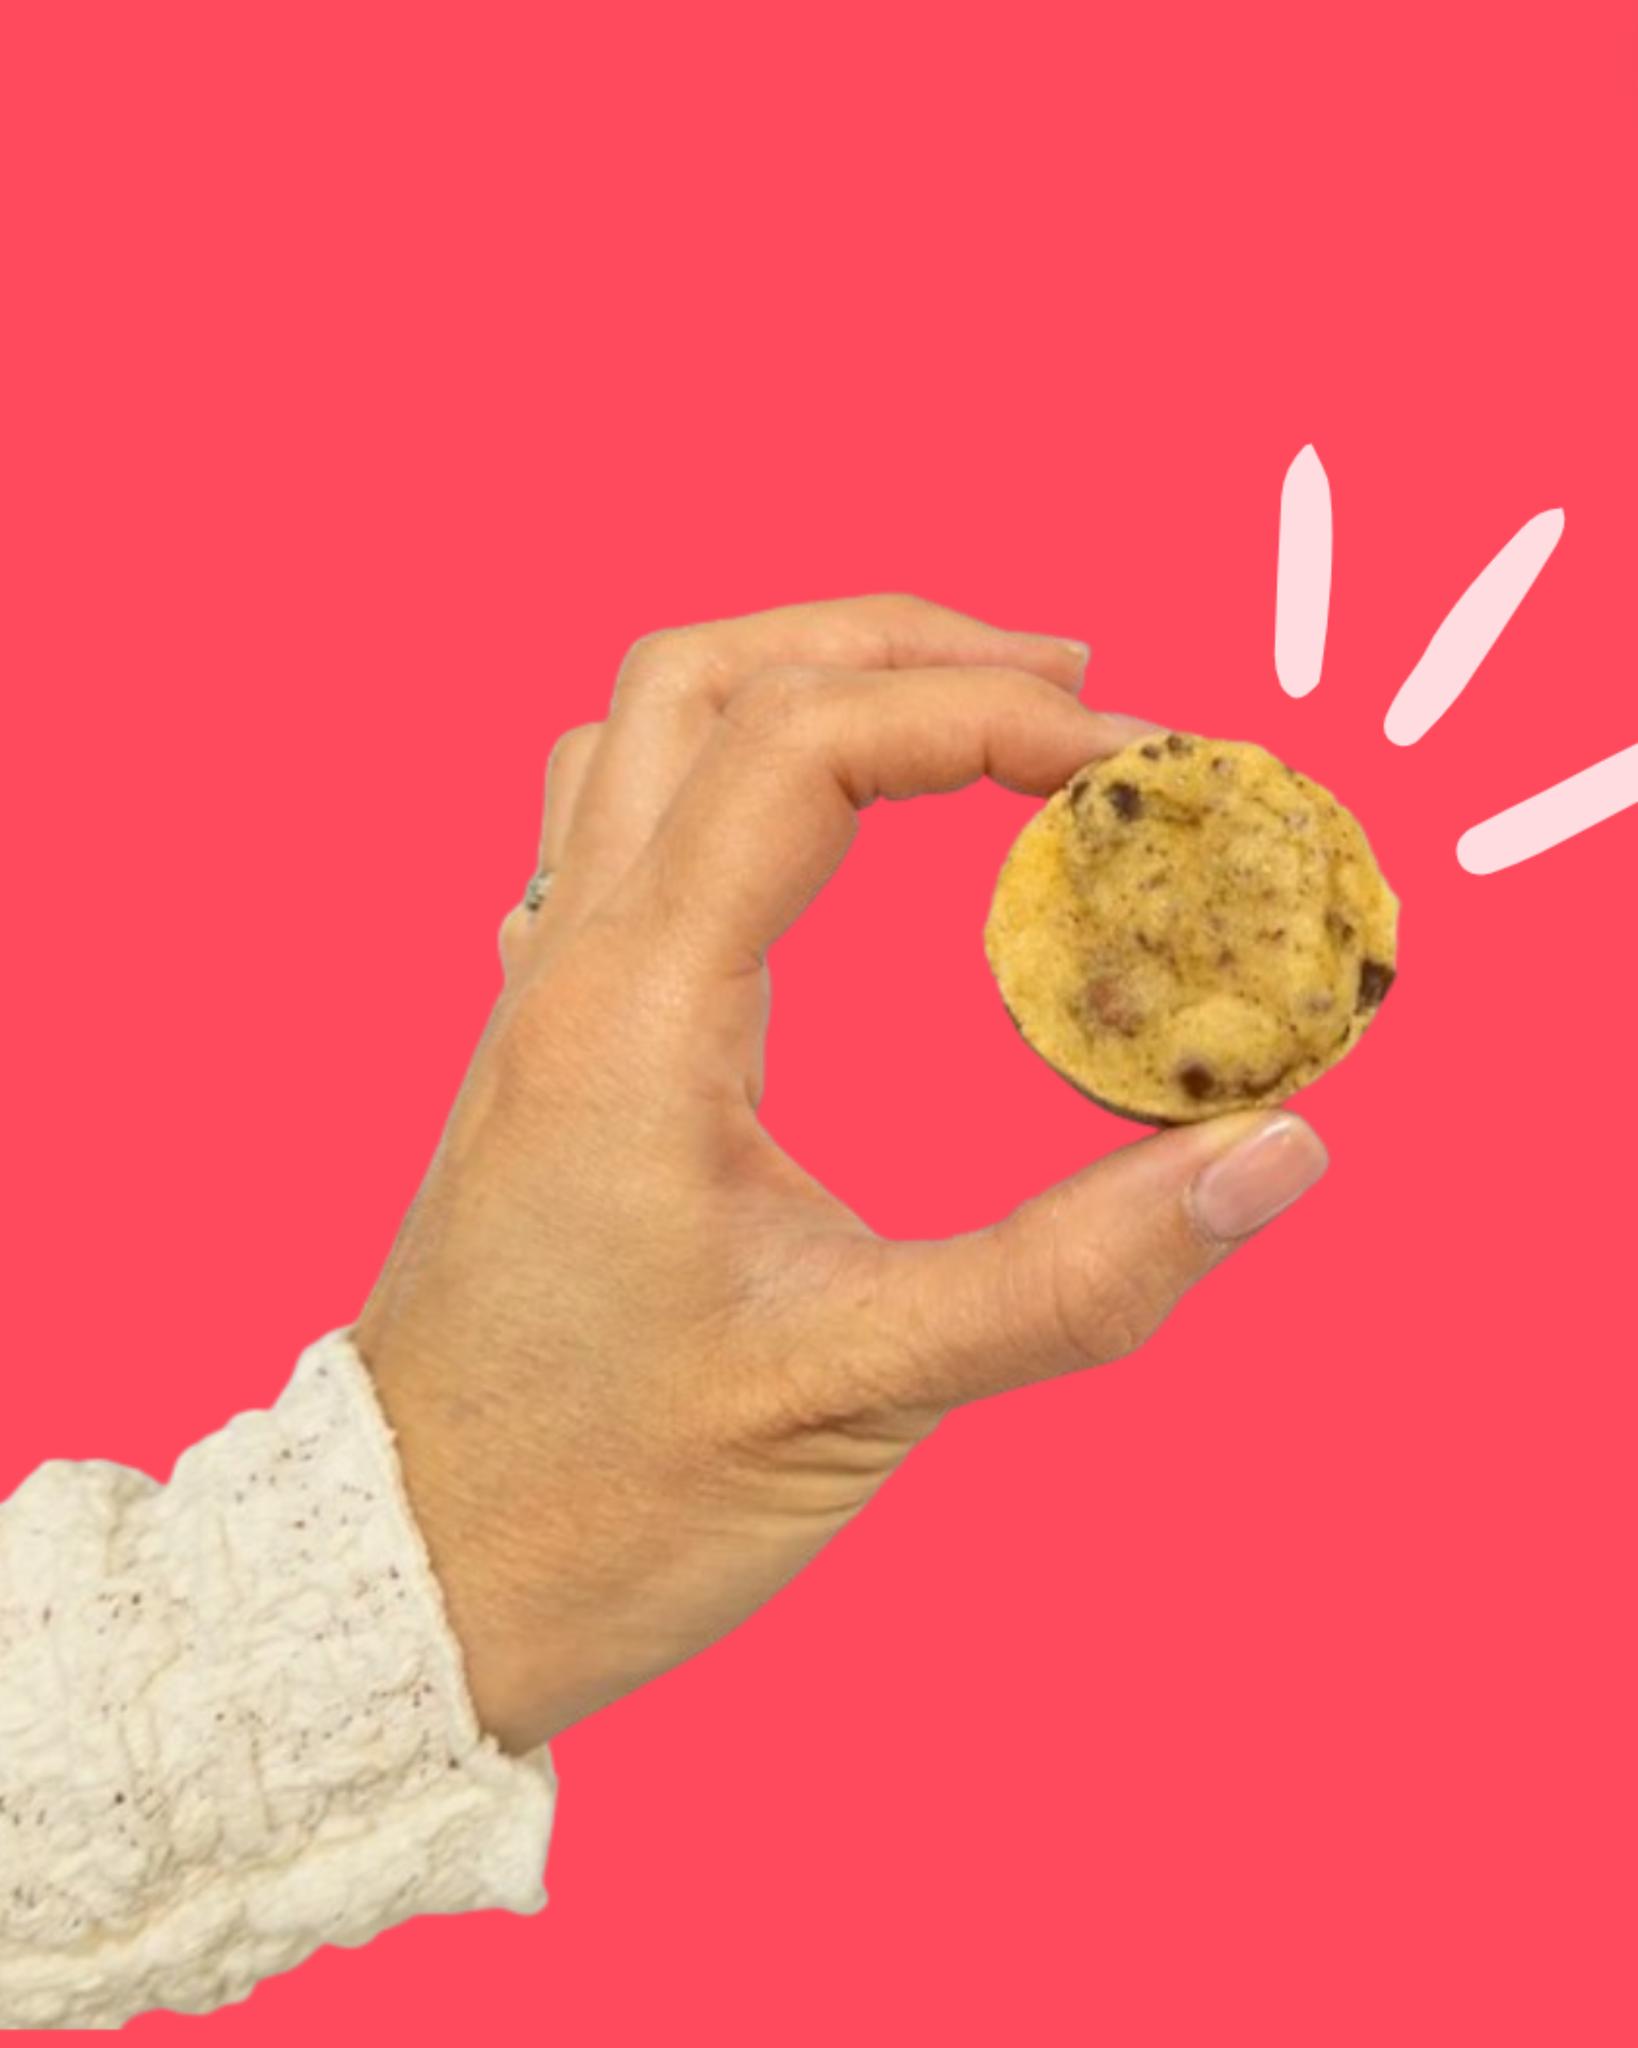 IT’S COOKIES TIME ! 

🍪 Faits maison à Gémenos (13)
📍Disponibles dans plusieurs points de vente
💌 Plus d’infos sur notre site web (lien dans notre bio)

#CookiesGiraudon #Bonheur #CookiesAvecAmour  #GourmandiseAuthentique #homemadewithlove #CookiesArtisanaux #FaitAvecAmour #Gémenos  #CuisineArtisanale #marseille #MadeInFrance